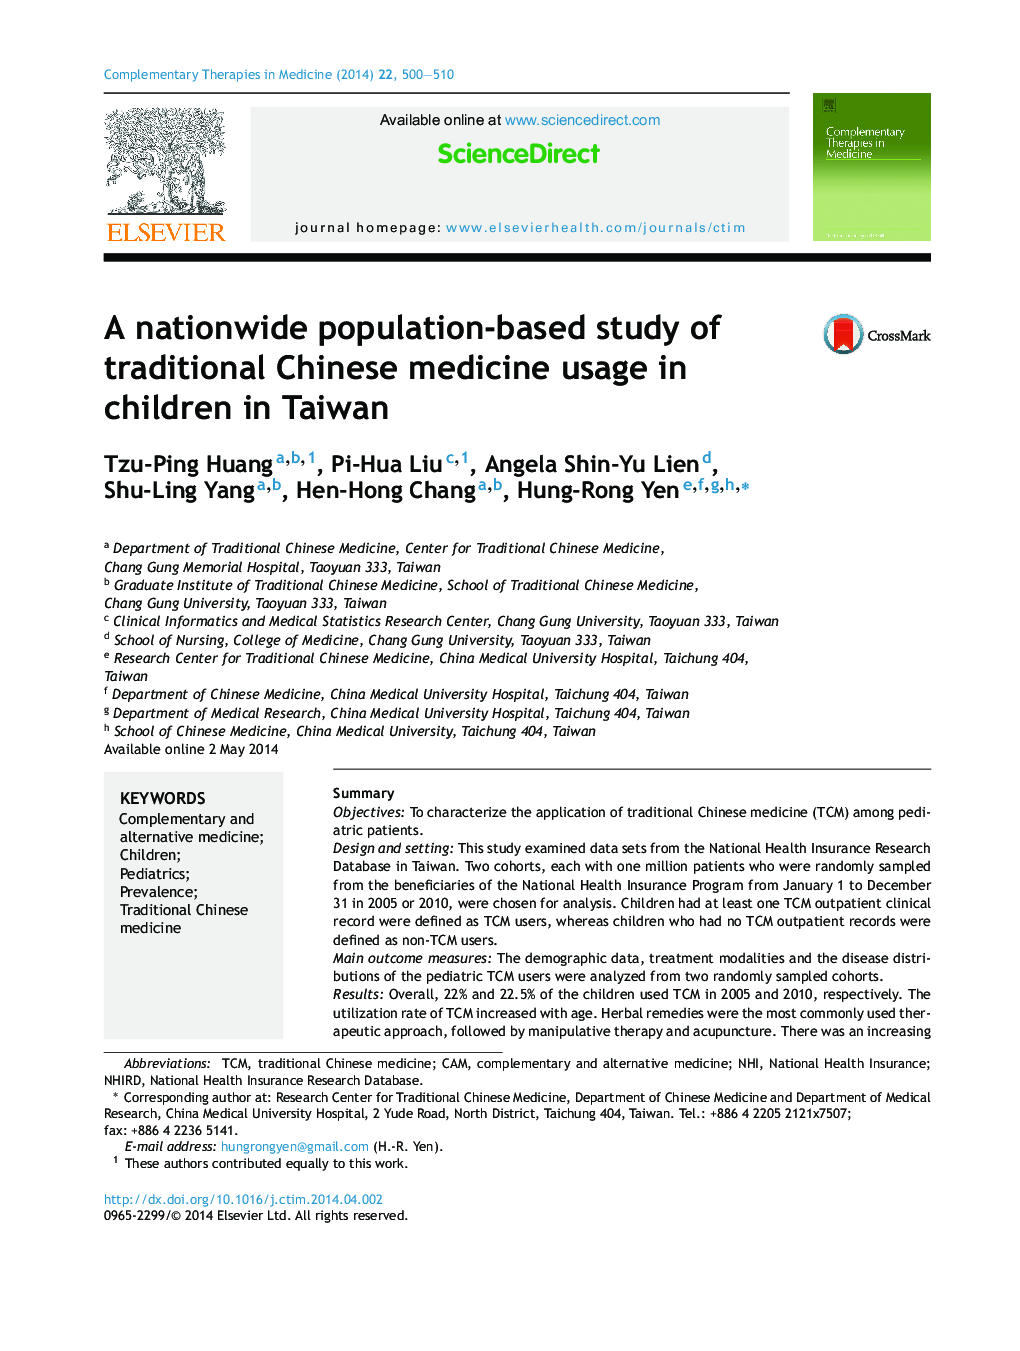 یک مطالعه در سراسر کشور در مورد استفاده از طب سنتی چینی در کودکان در تایوان 